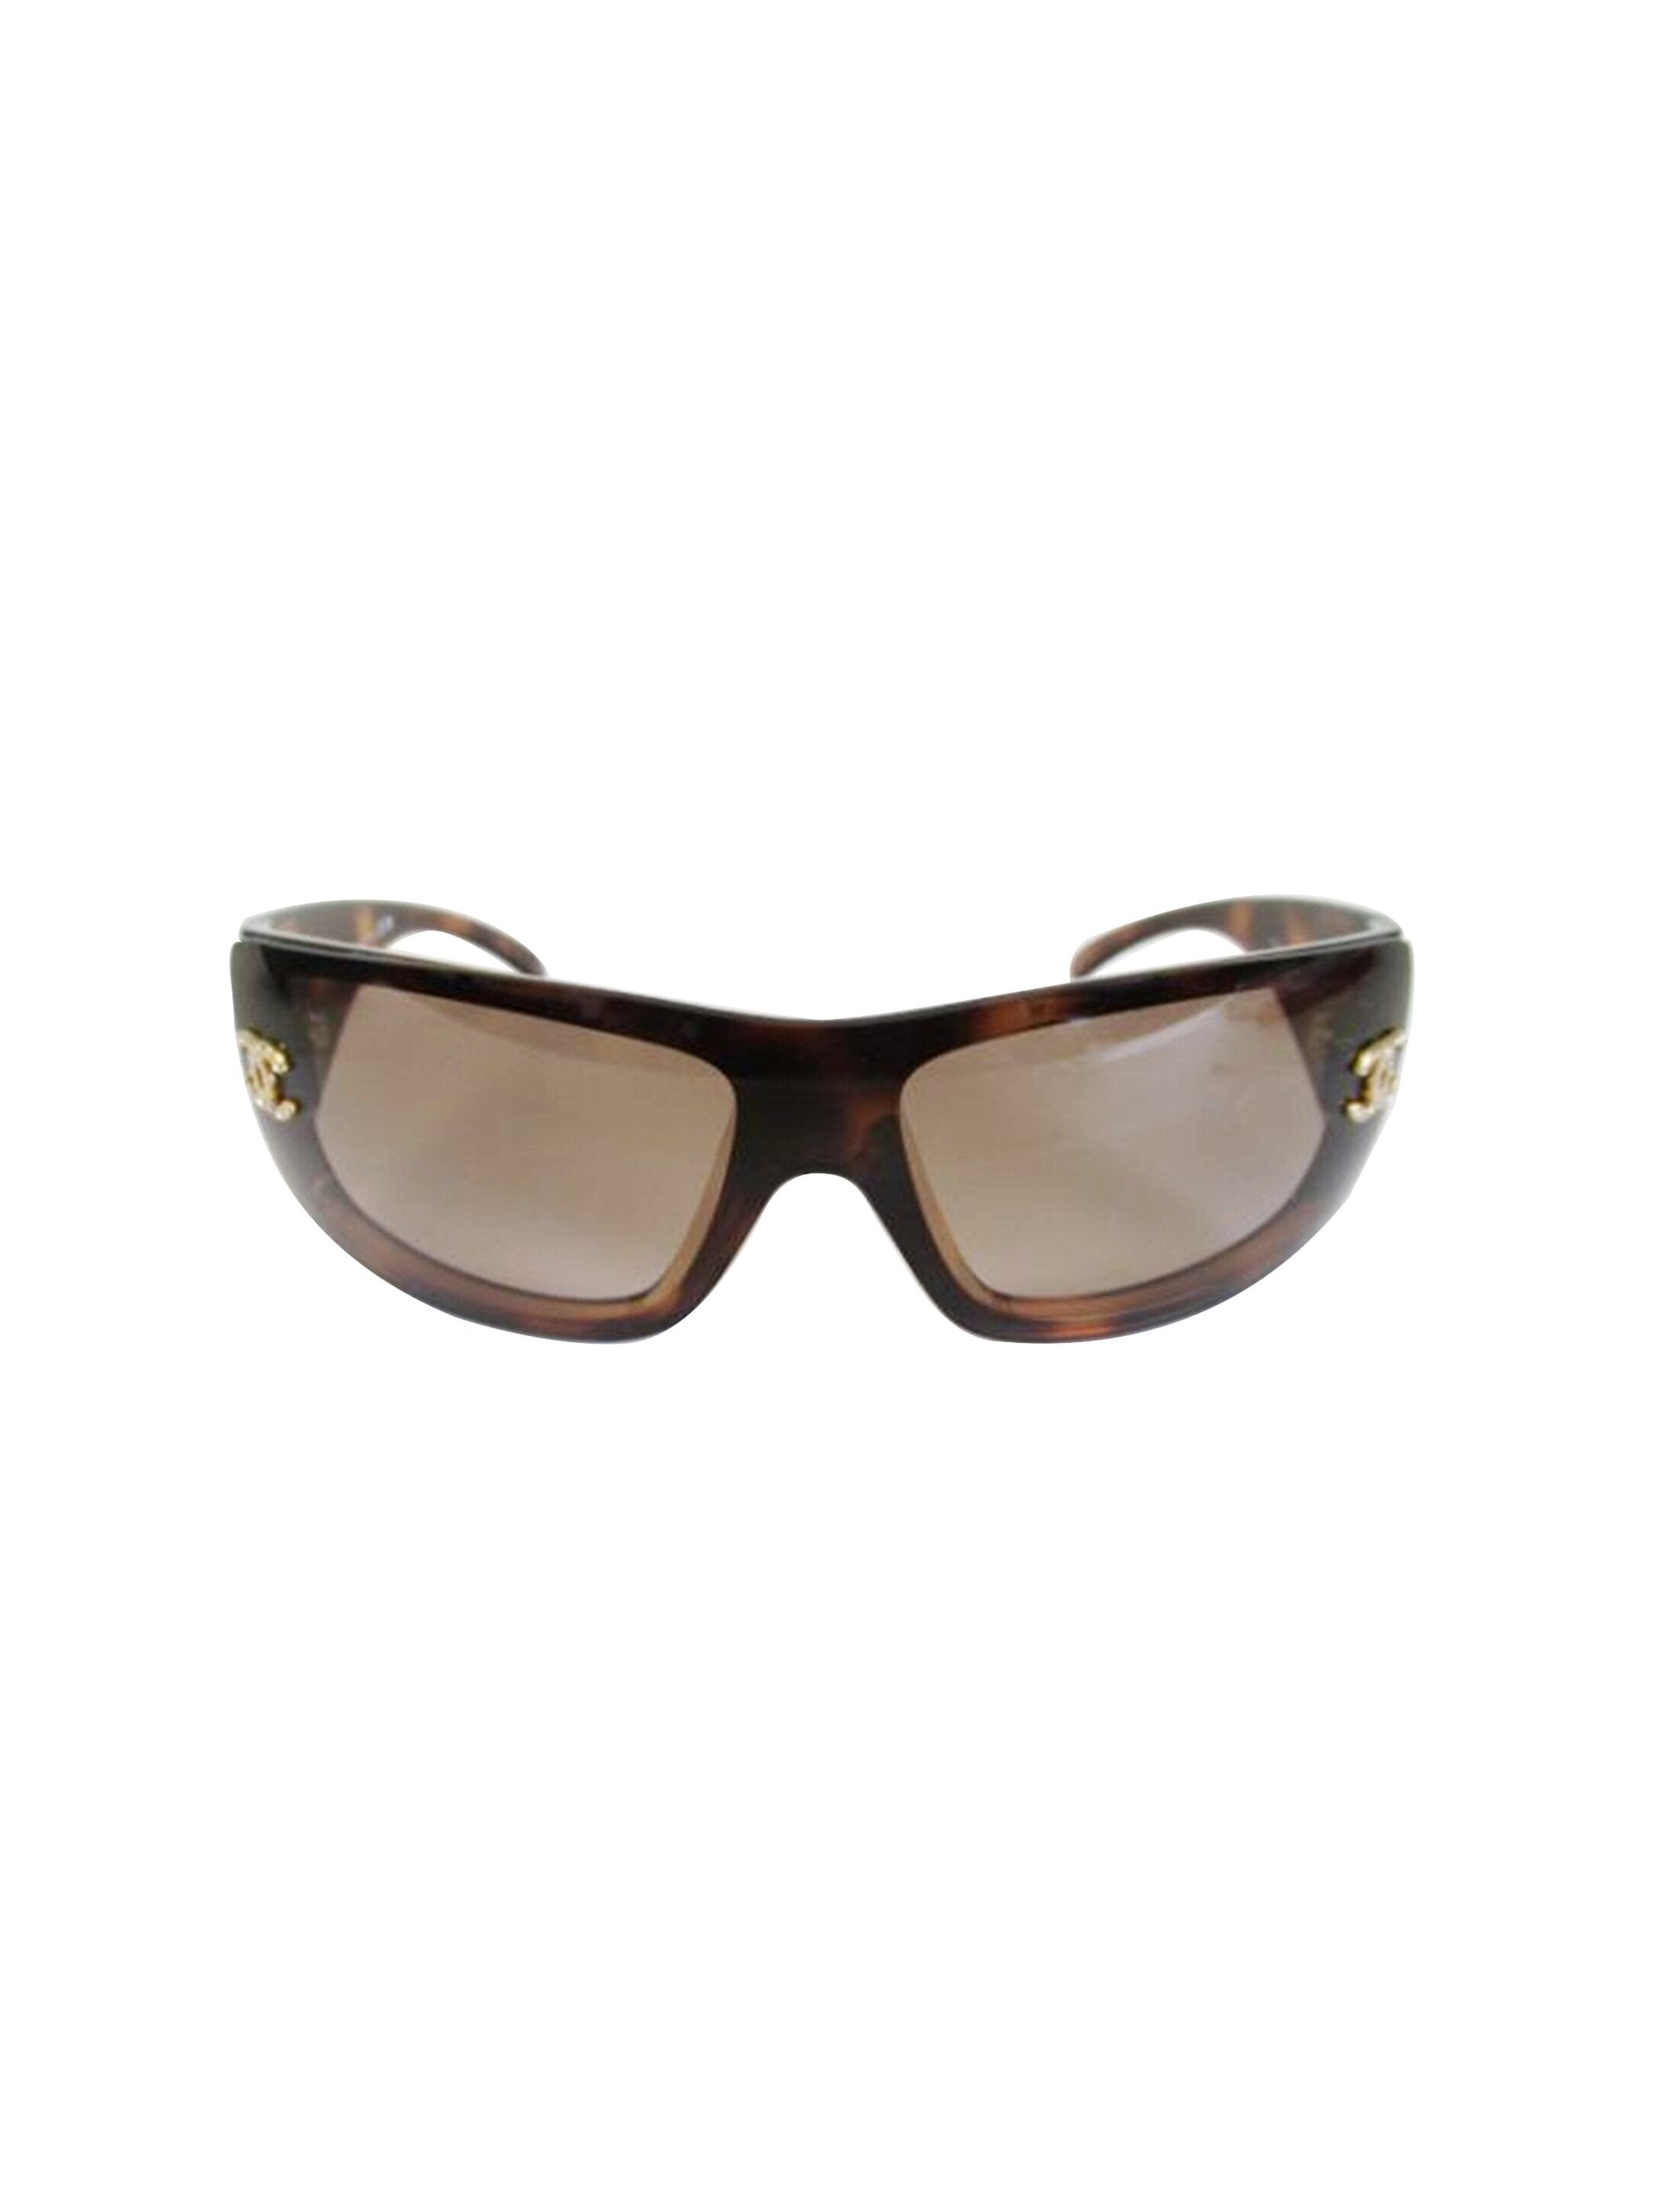 Chanel 2000s Dark Brown Rare Tortoise Sunglasses · INTO